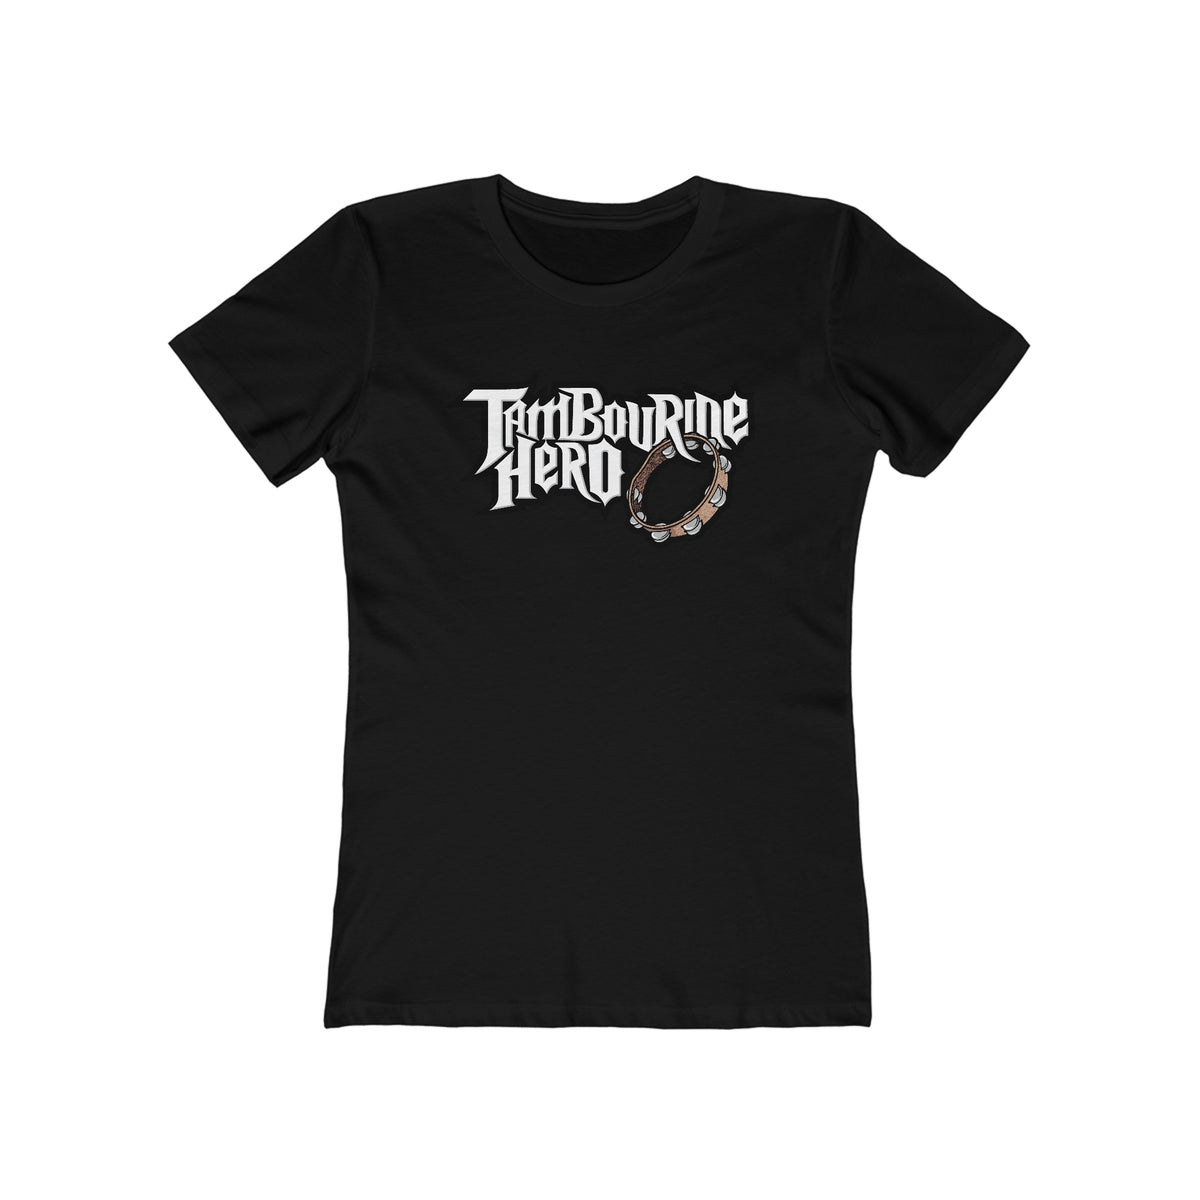 Tambourine Hero - Women’s T-Shirt